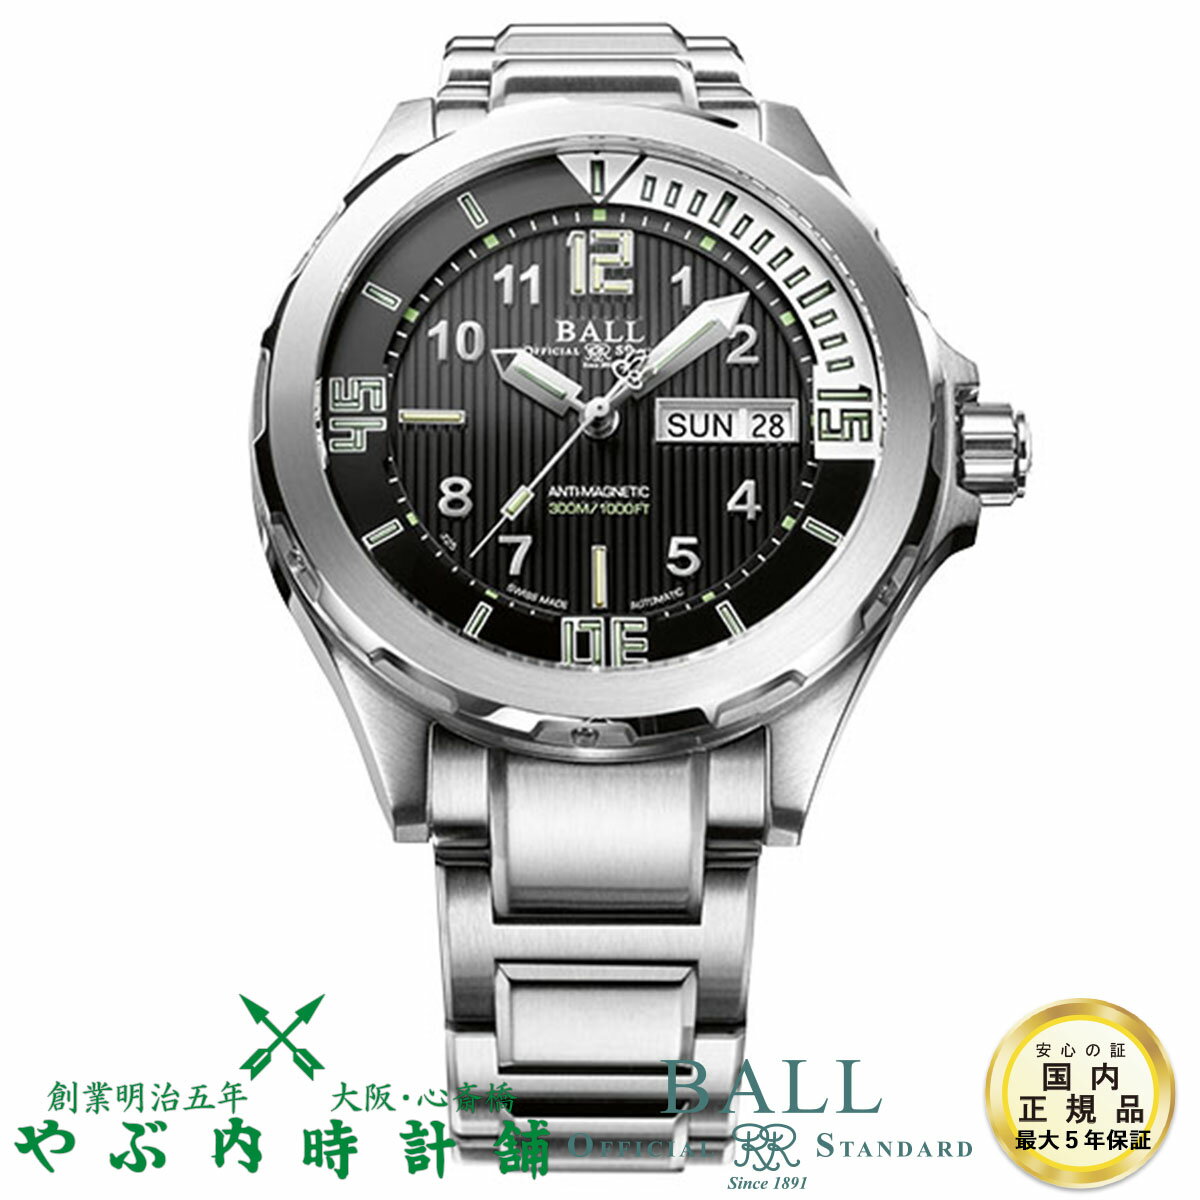 ボールウォッチ BALL WATCH エンジニアマスターII ダイバーIII DM3020A-SAJ-BK 腕時計 自動巻 正規品